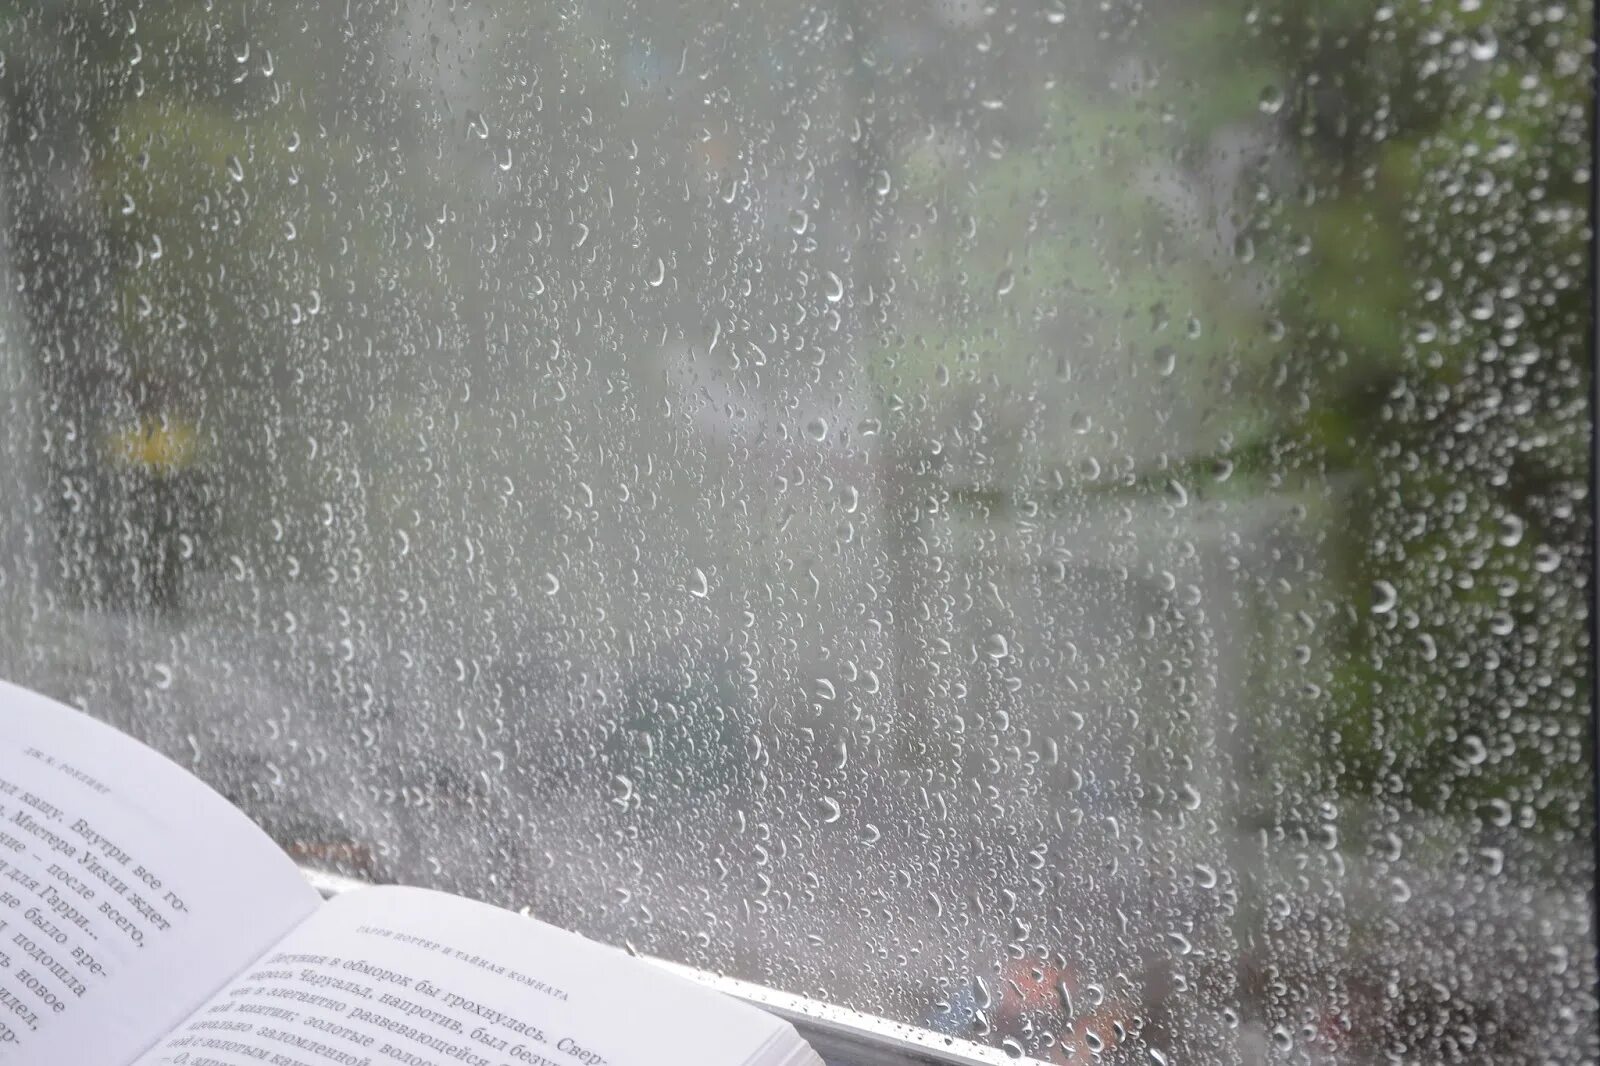 Дождь на окнах слова. Книга дождь. Окно дождь книга. Чтение в дождливый день. Книга и дождь за окном.